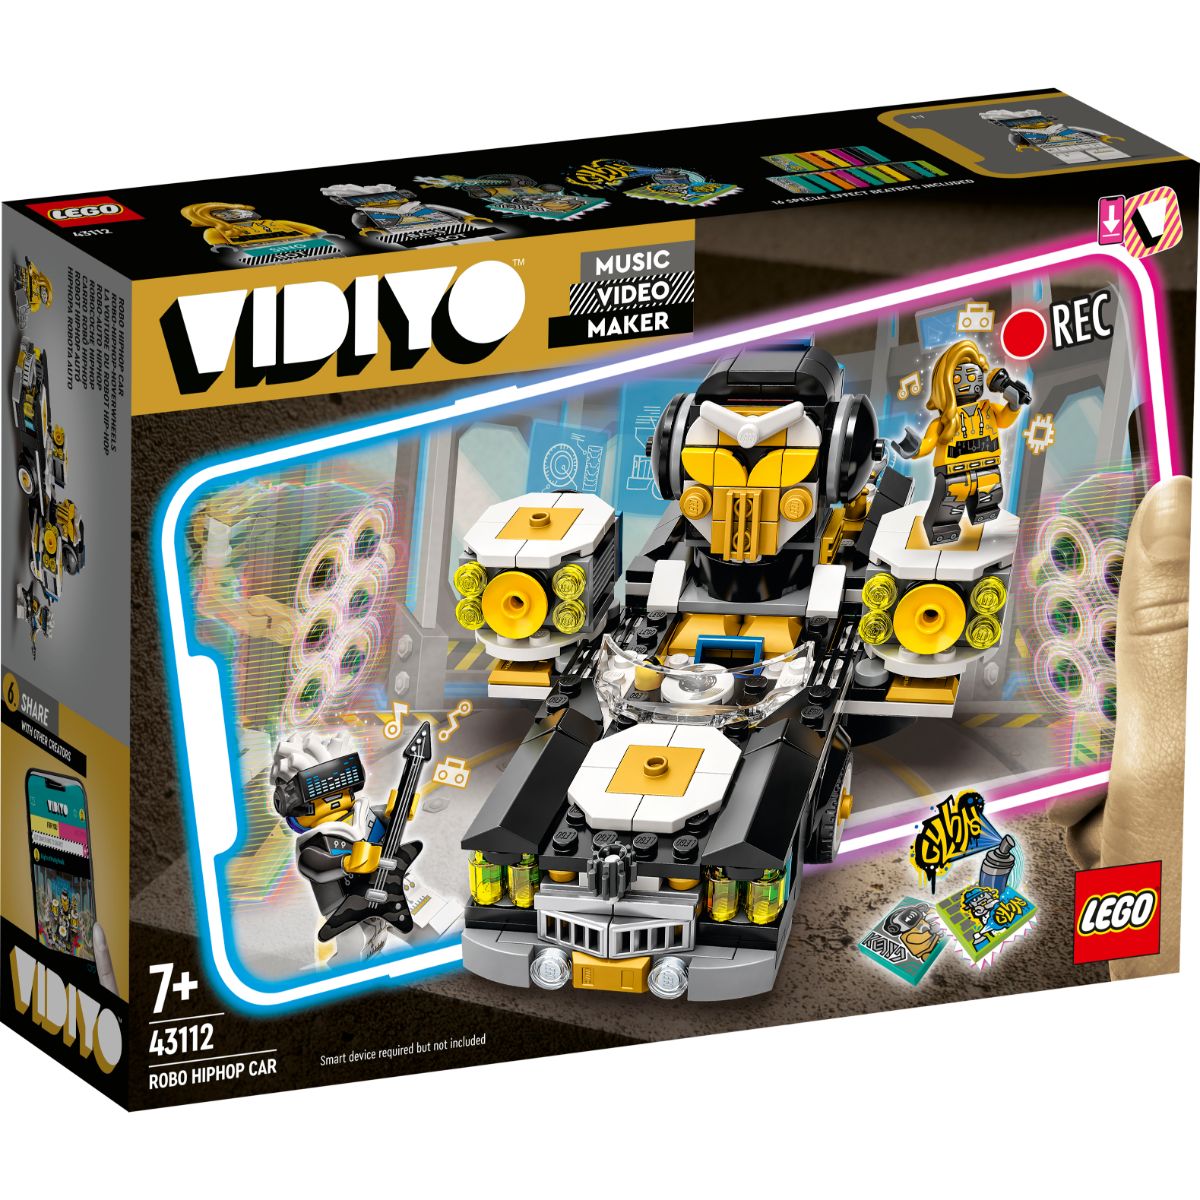 LEGO® Vidiyo – Robo Hiphop Car (43112) LEGO